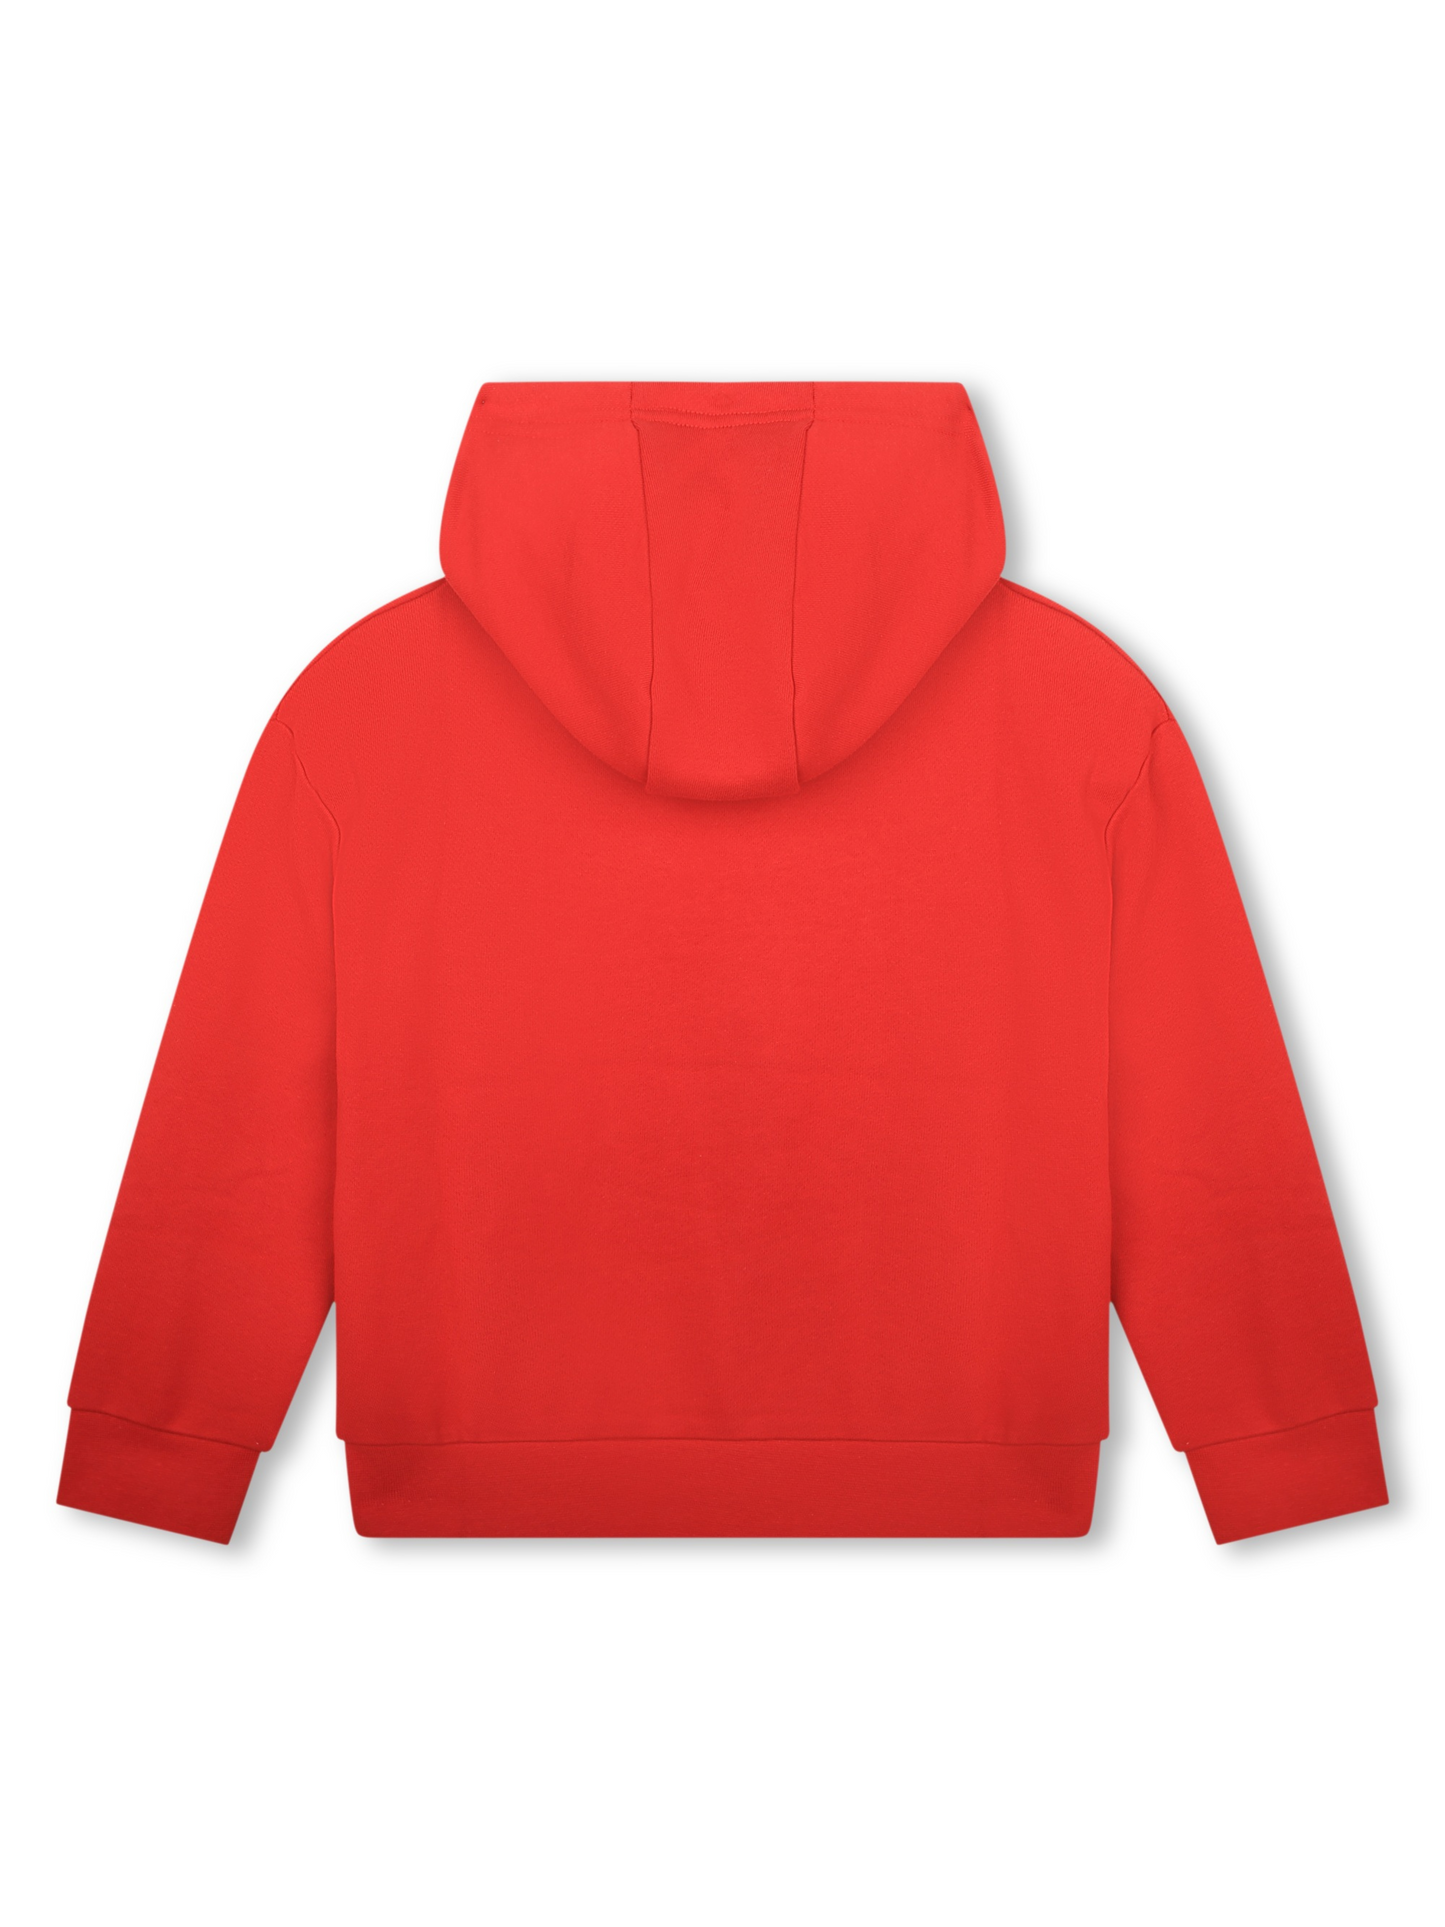 Michael Kors Red Hooded Sweatshirt _R15213-961